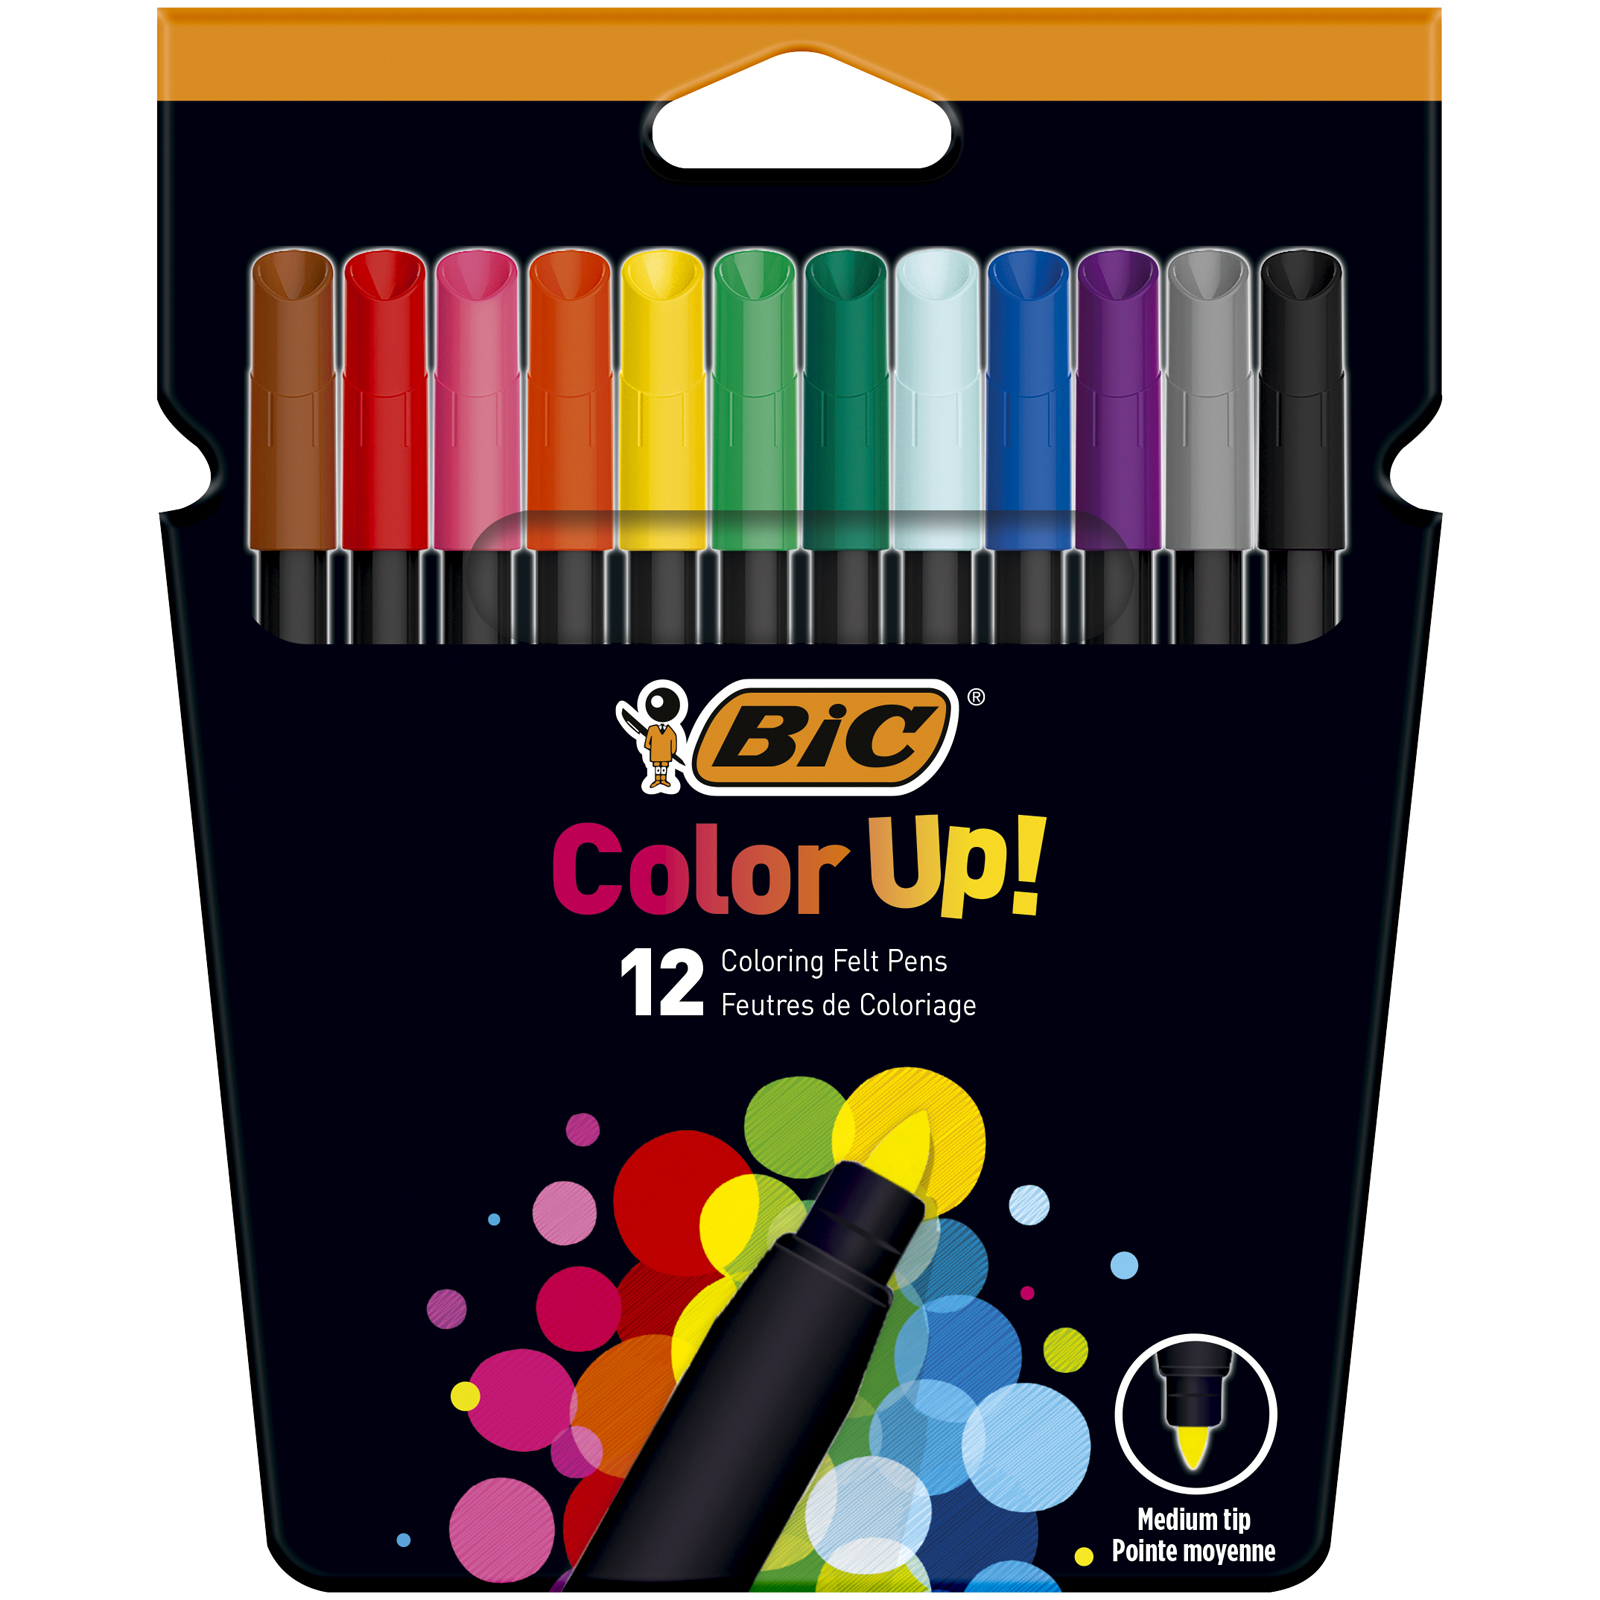 12 feutres de coloriage - Pointe moyenne - Ultra lavable - Color